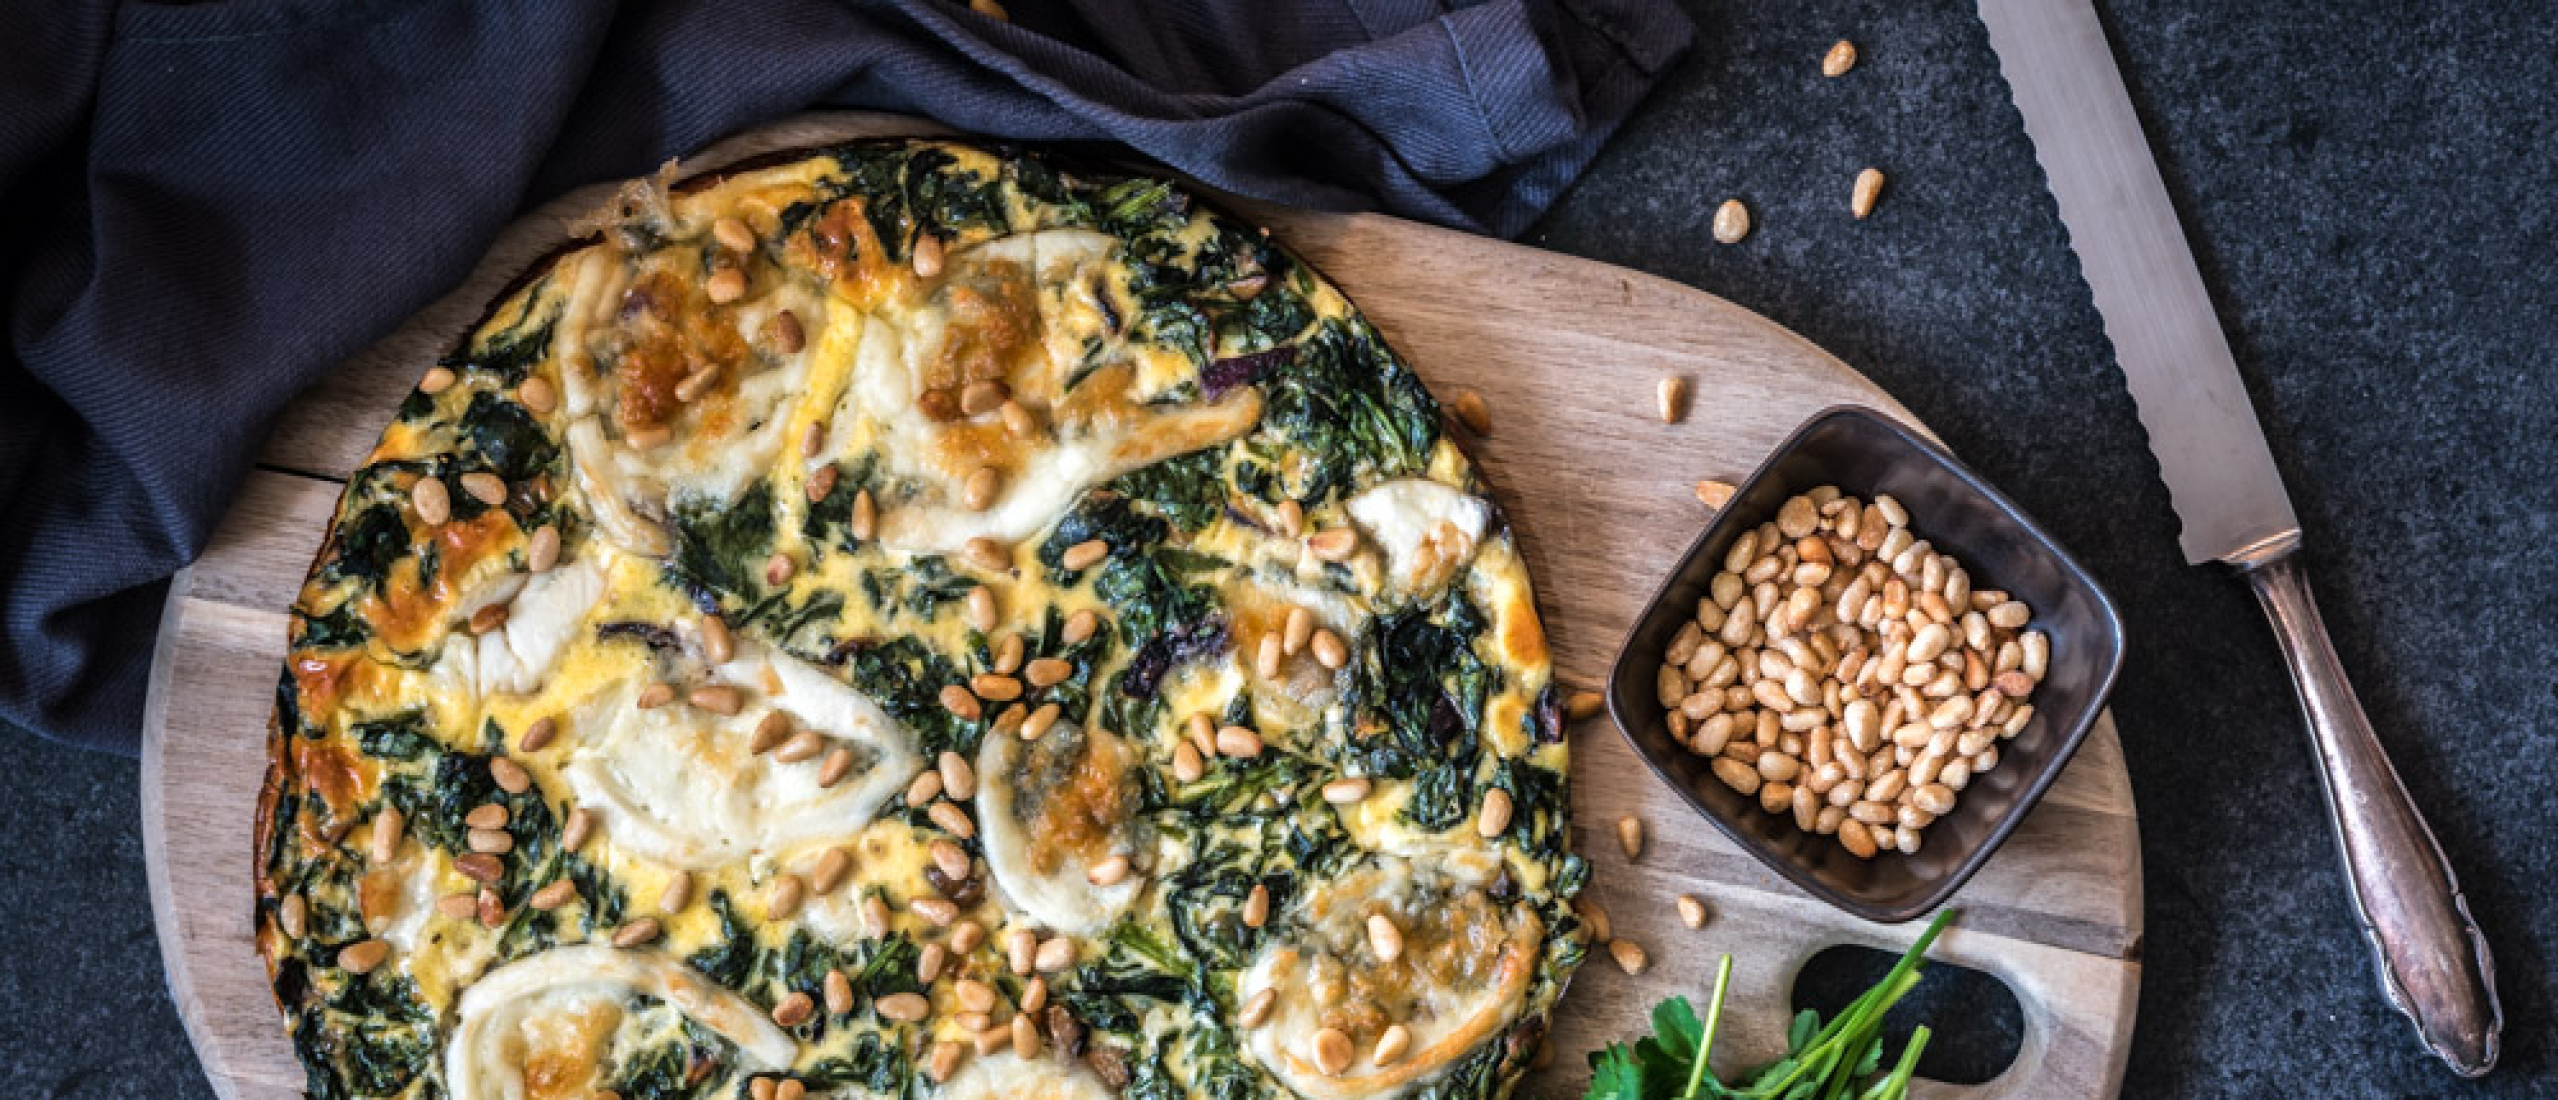 Recept: Heerlijke quiche met spinazie, mozzarella en champignons